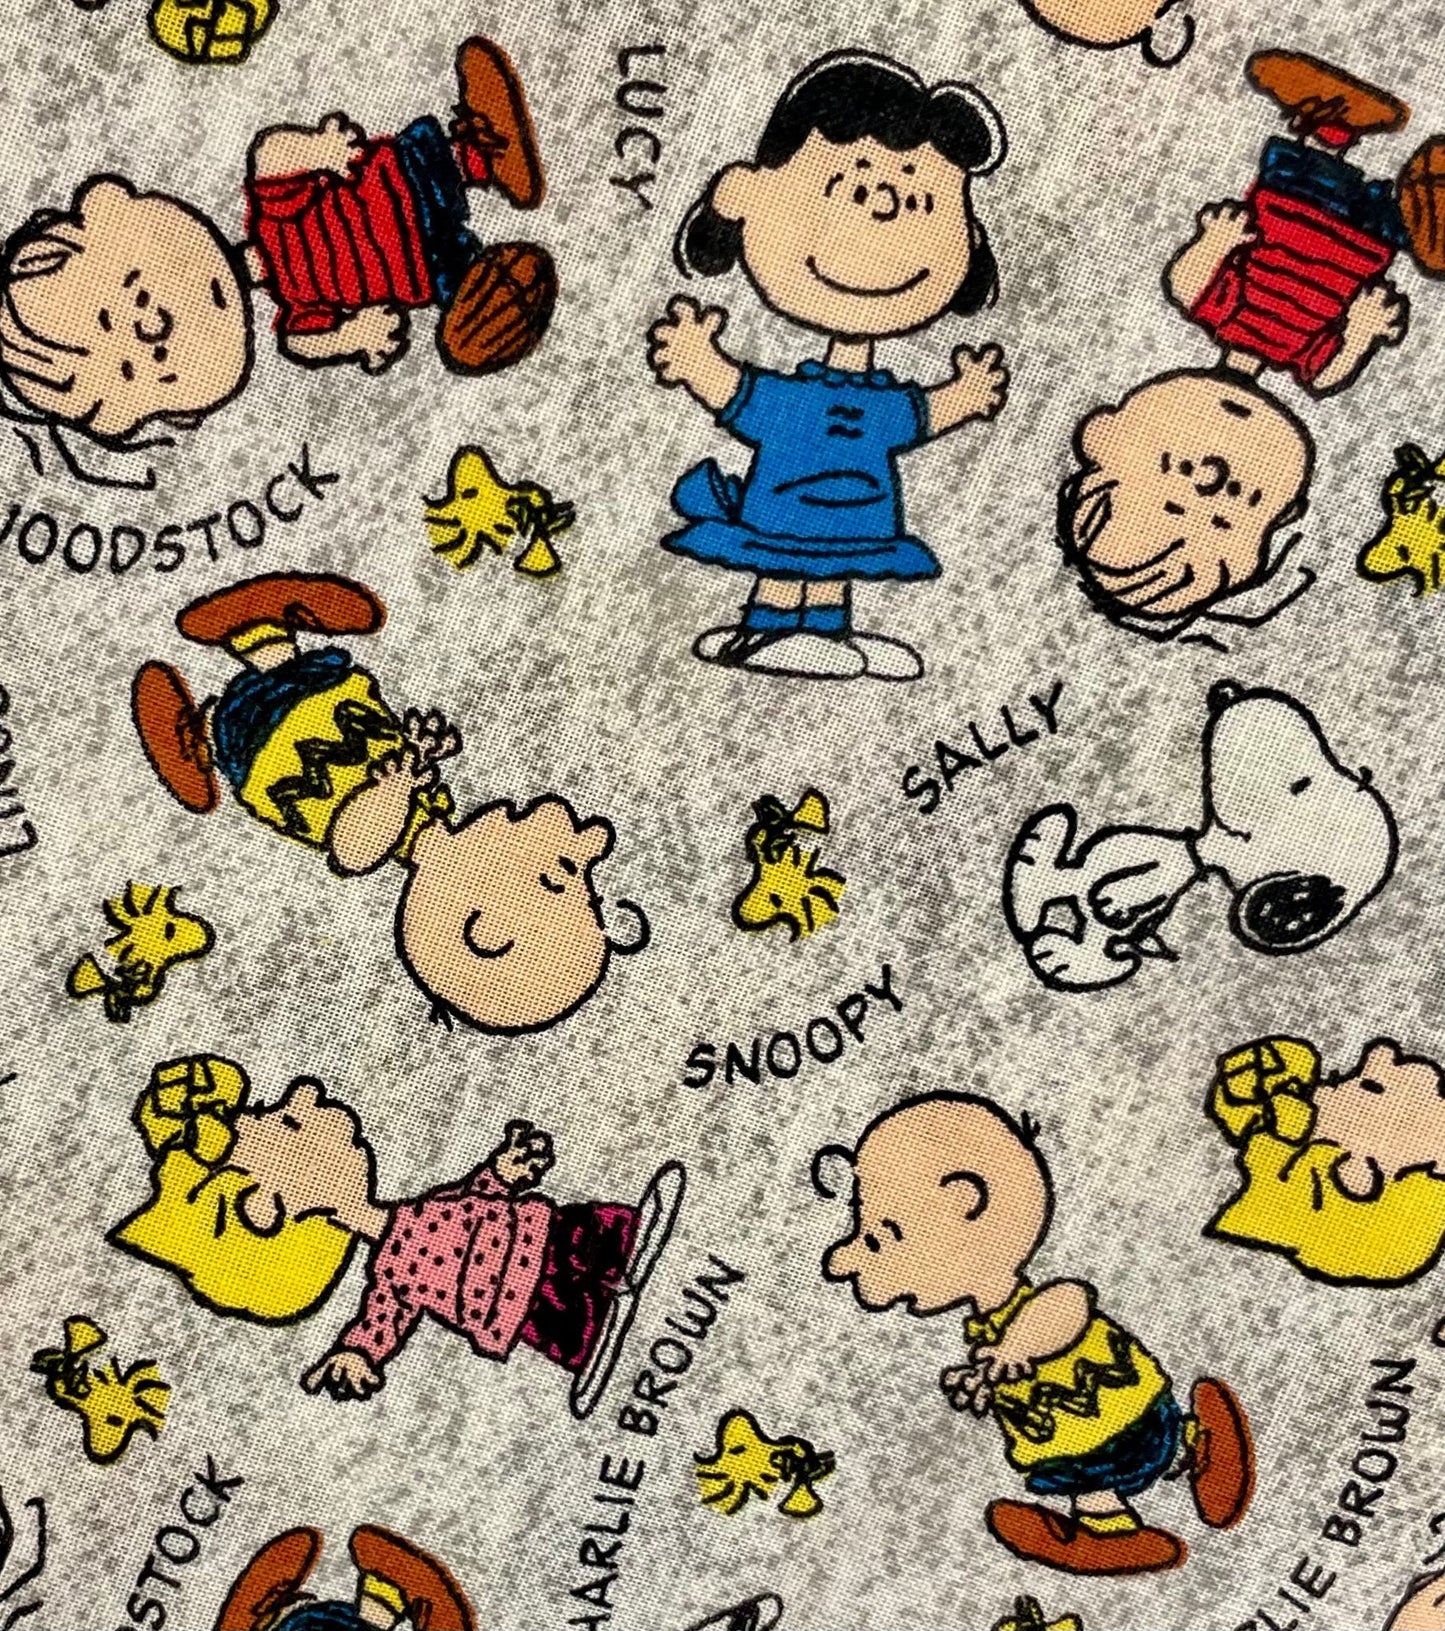 Cutest Peanuts, Charlie Brown, Snoopy blanket ever! Reversible!